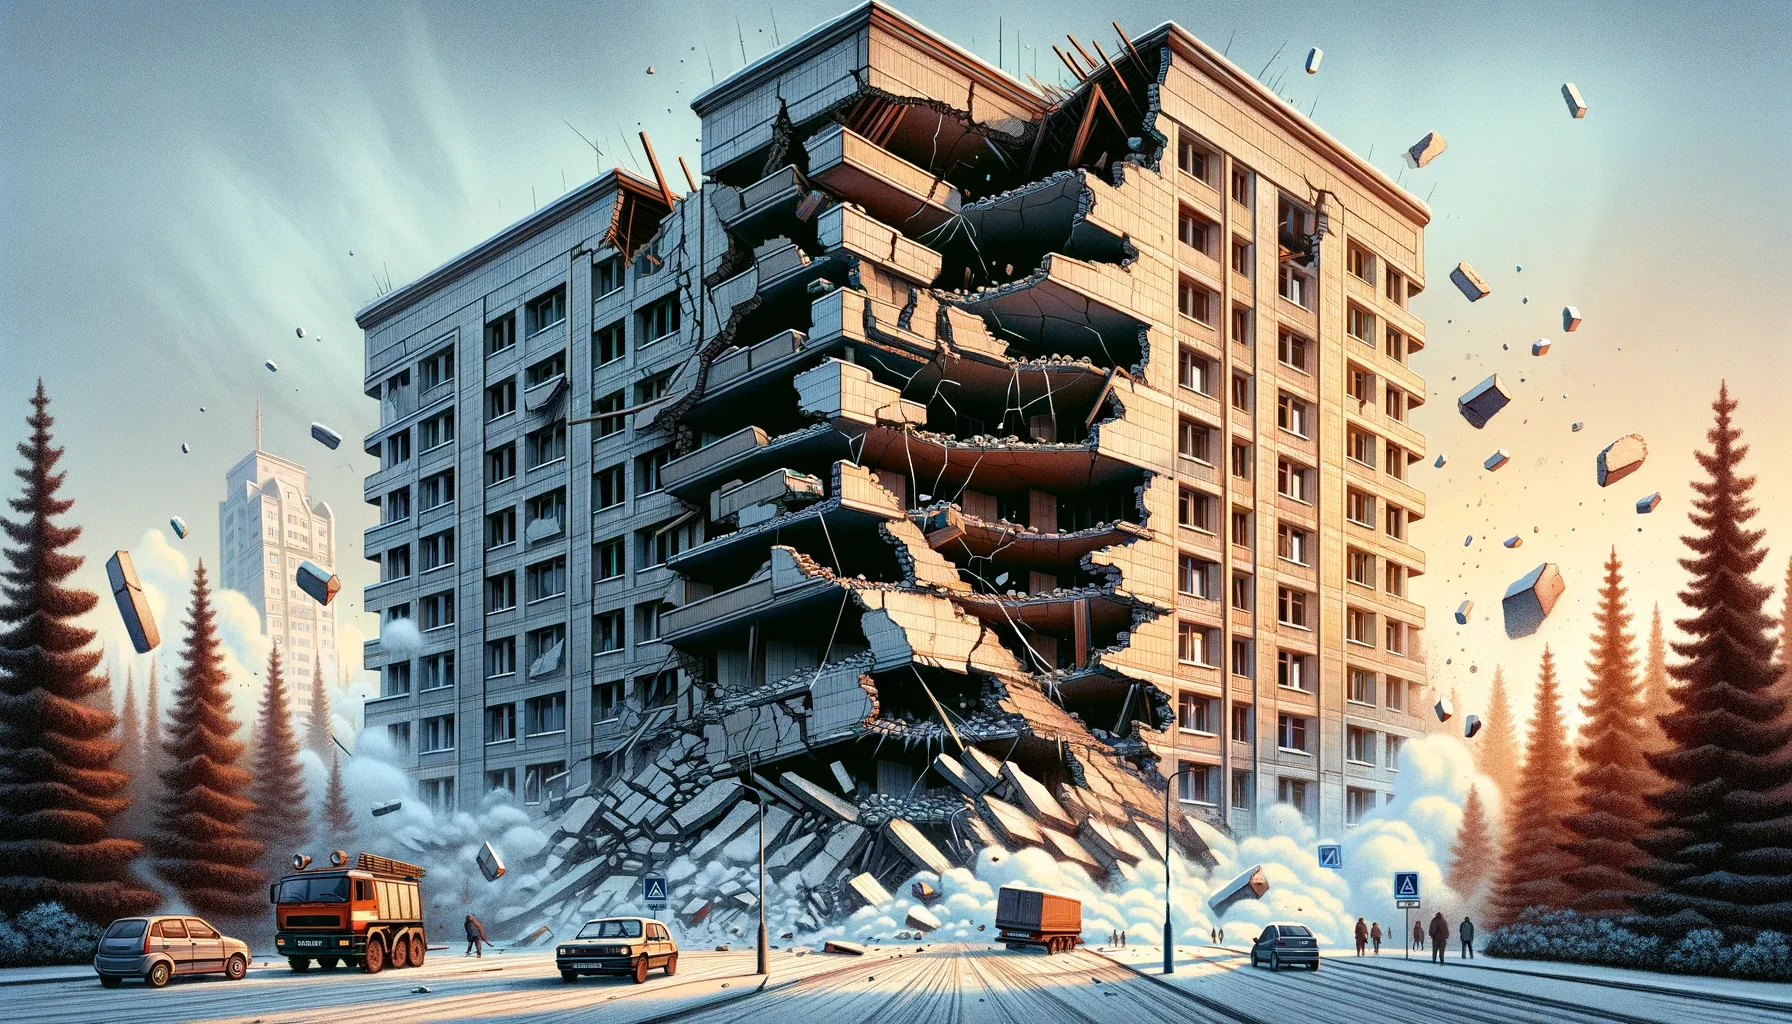 R1 (Clasa Rs I): Clădiri cu risc ridicat de prăbușire la cutremurul de proiectare.